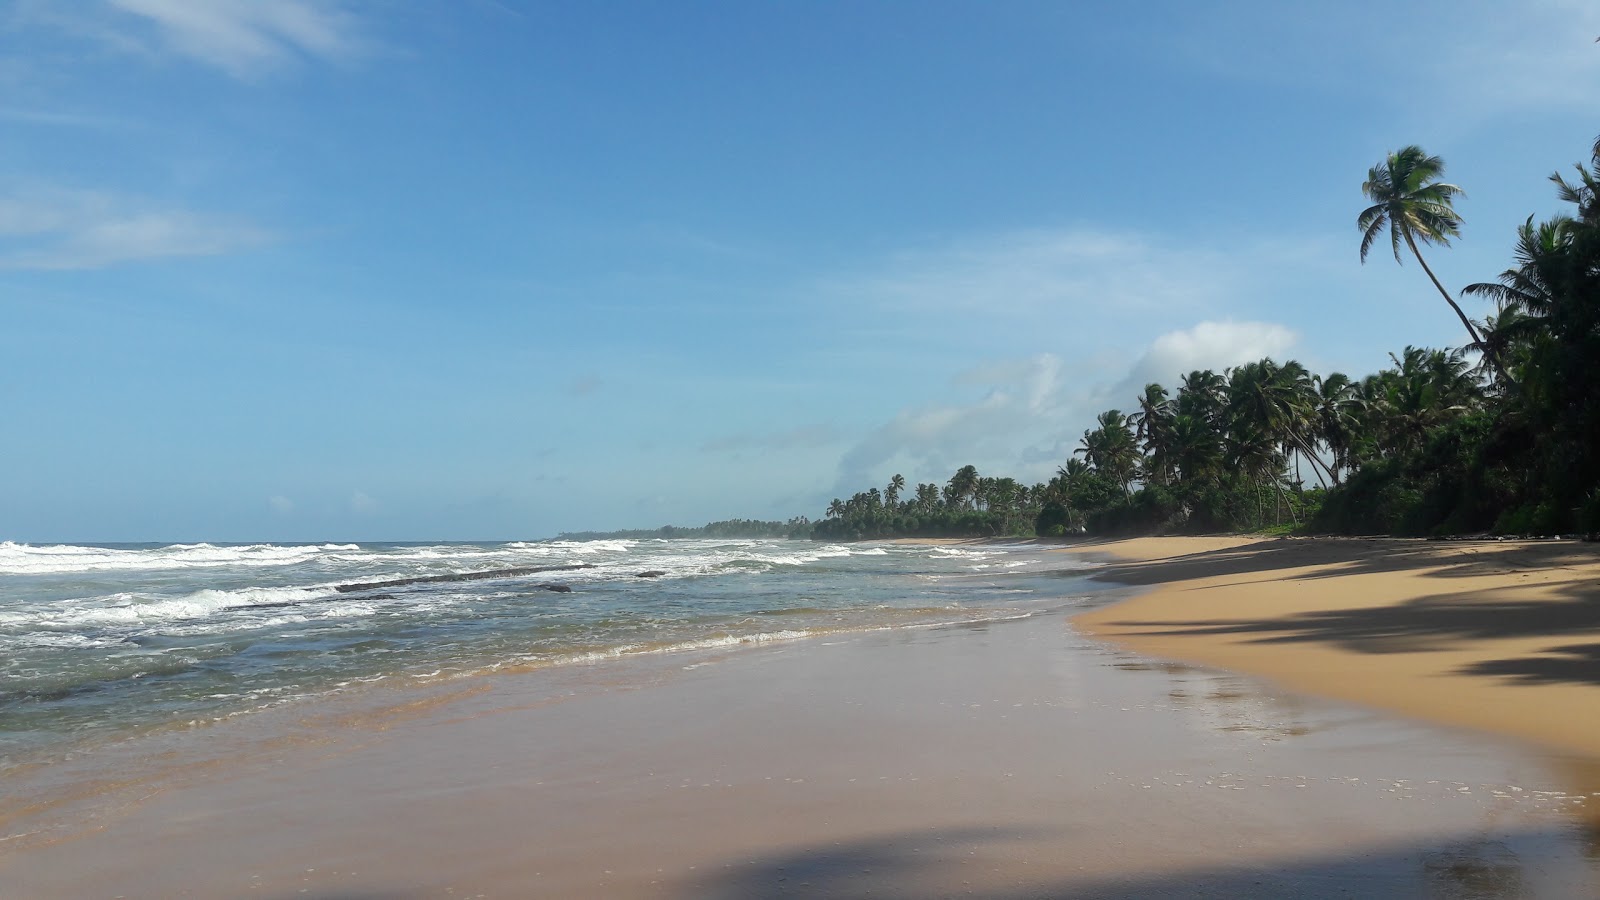 Piyagama beach'in fotoğrafı çok temiz temizlik seviyesi ile